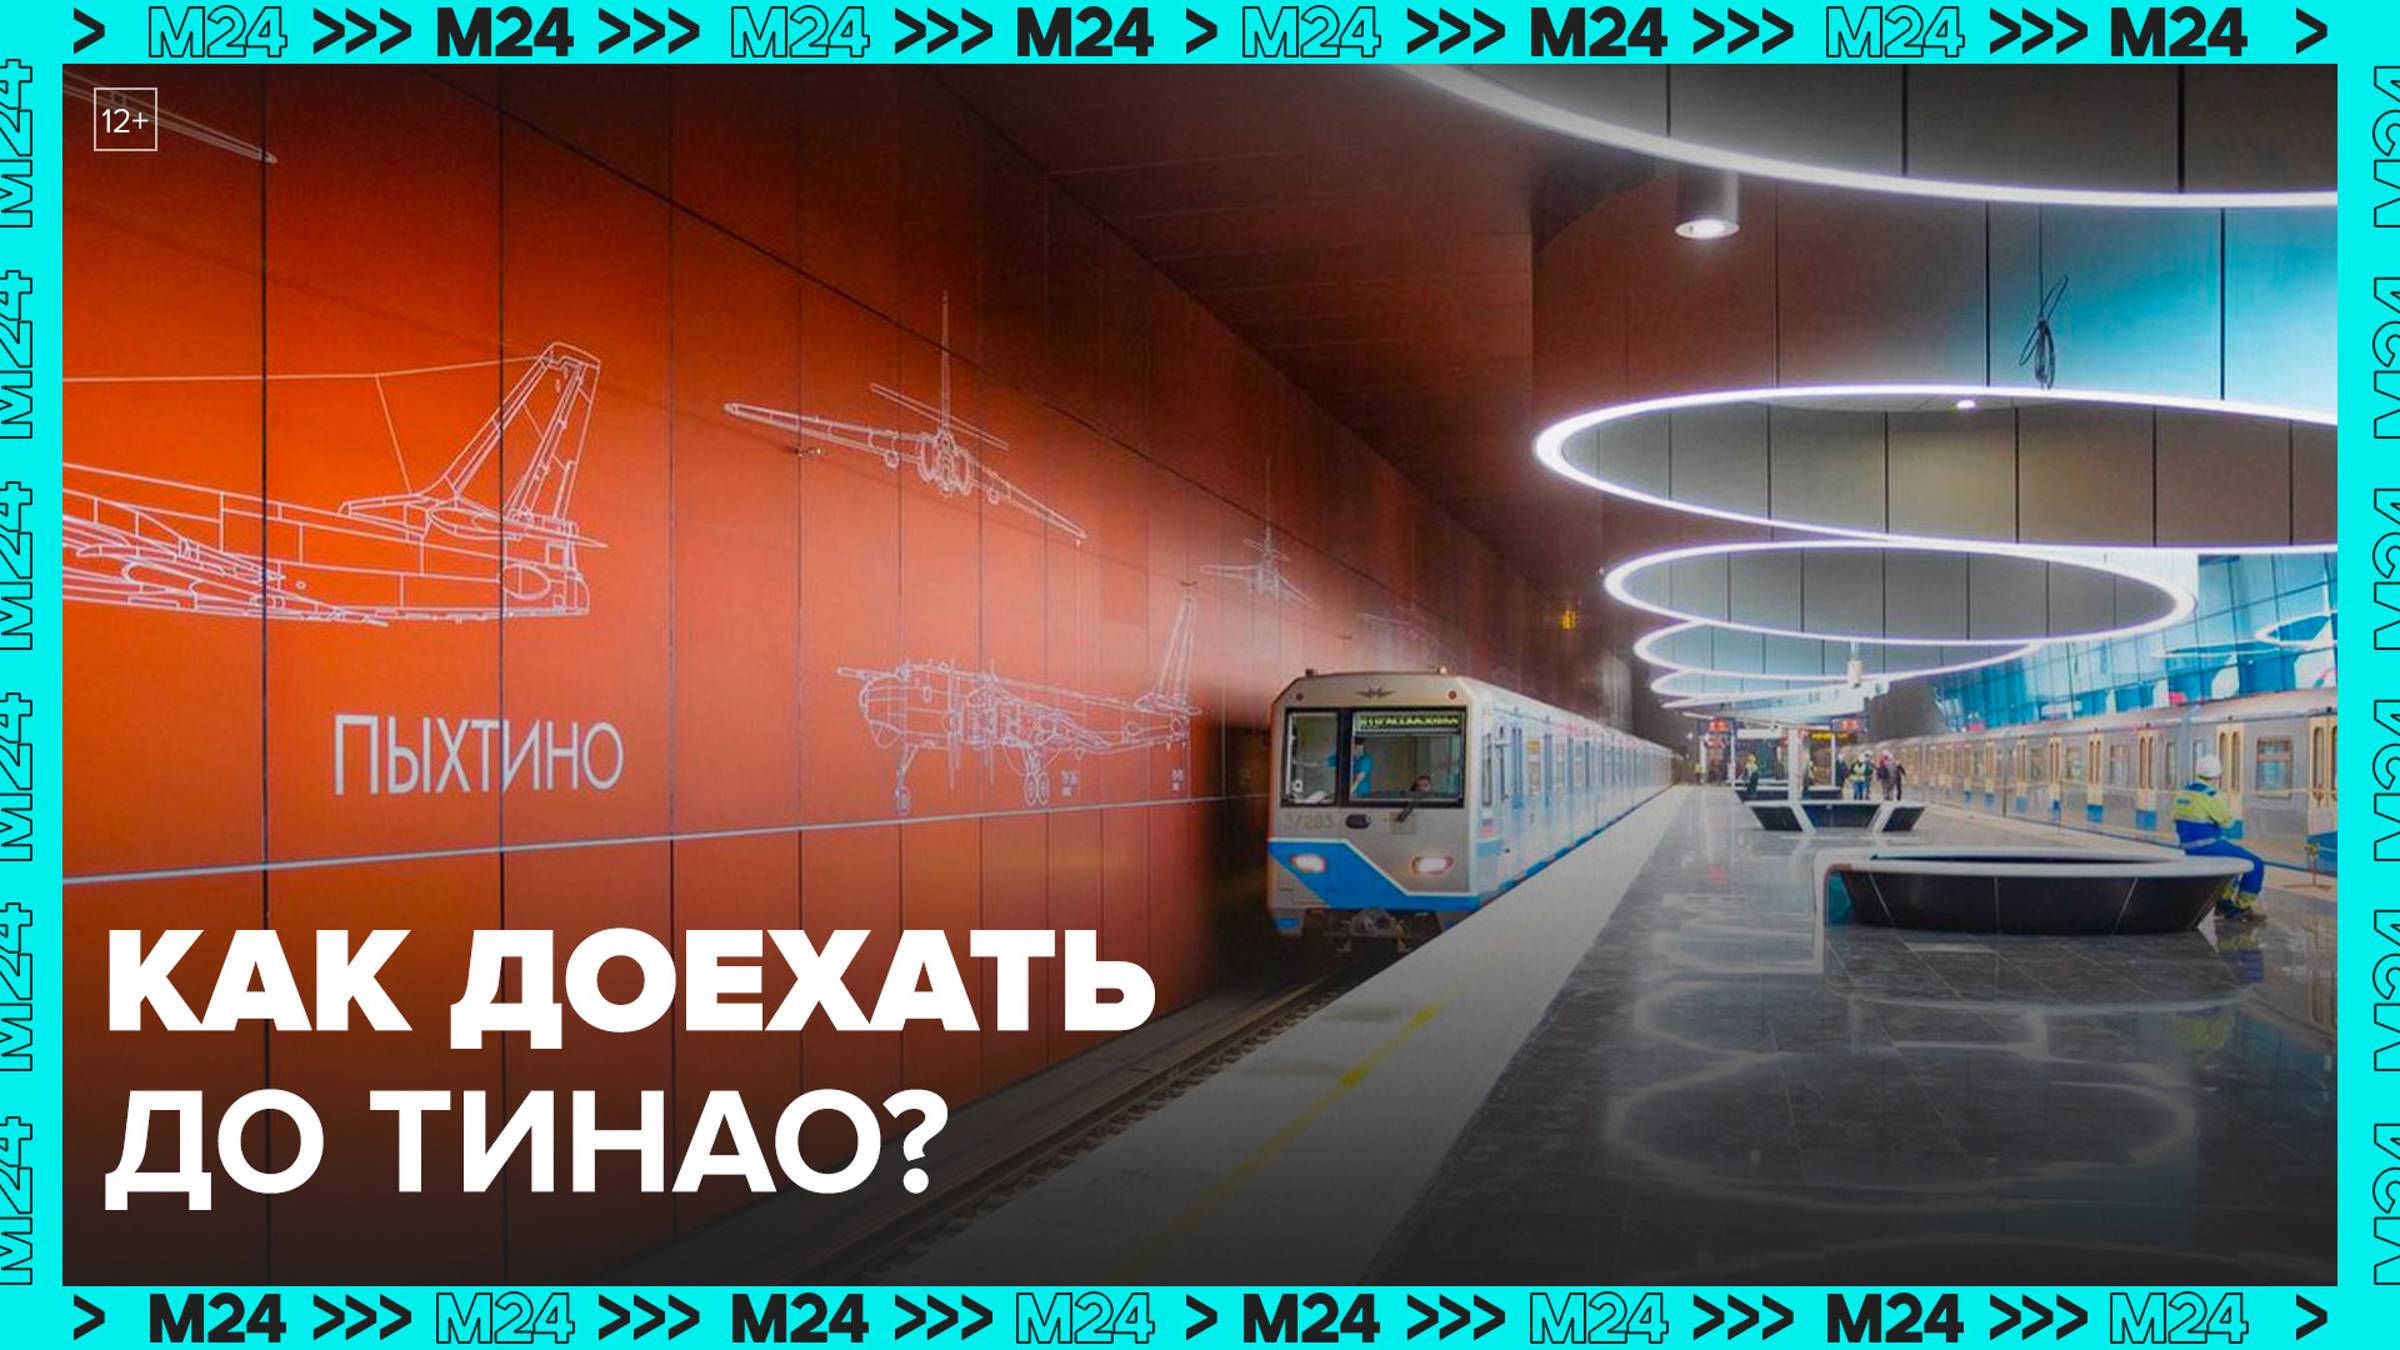 Как изменился транспорт в ТиНАО за 12 лет? — Москва 24